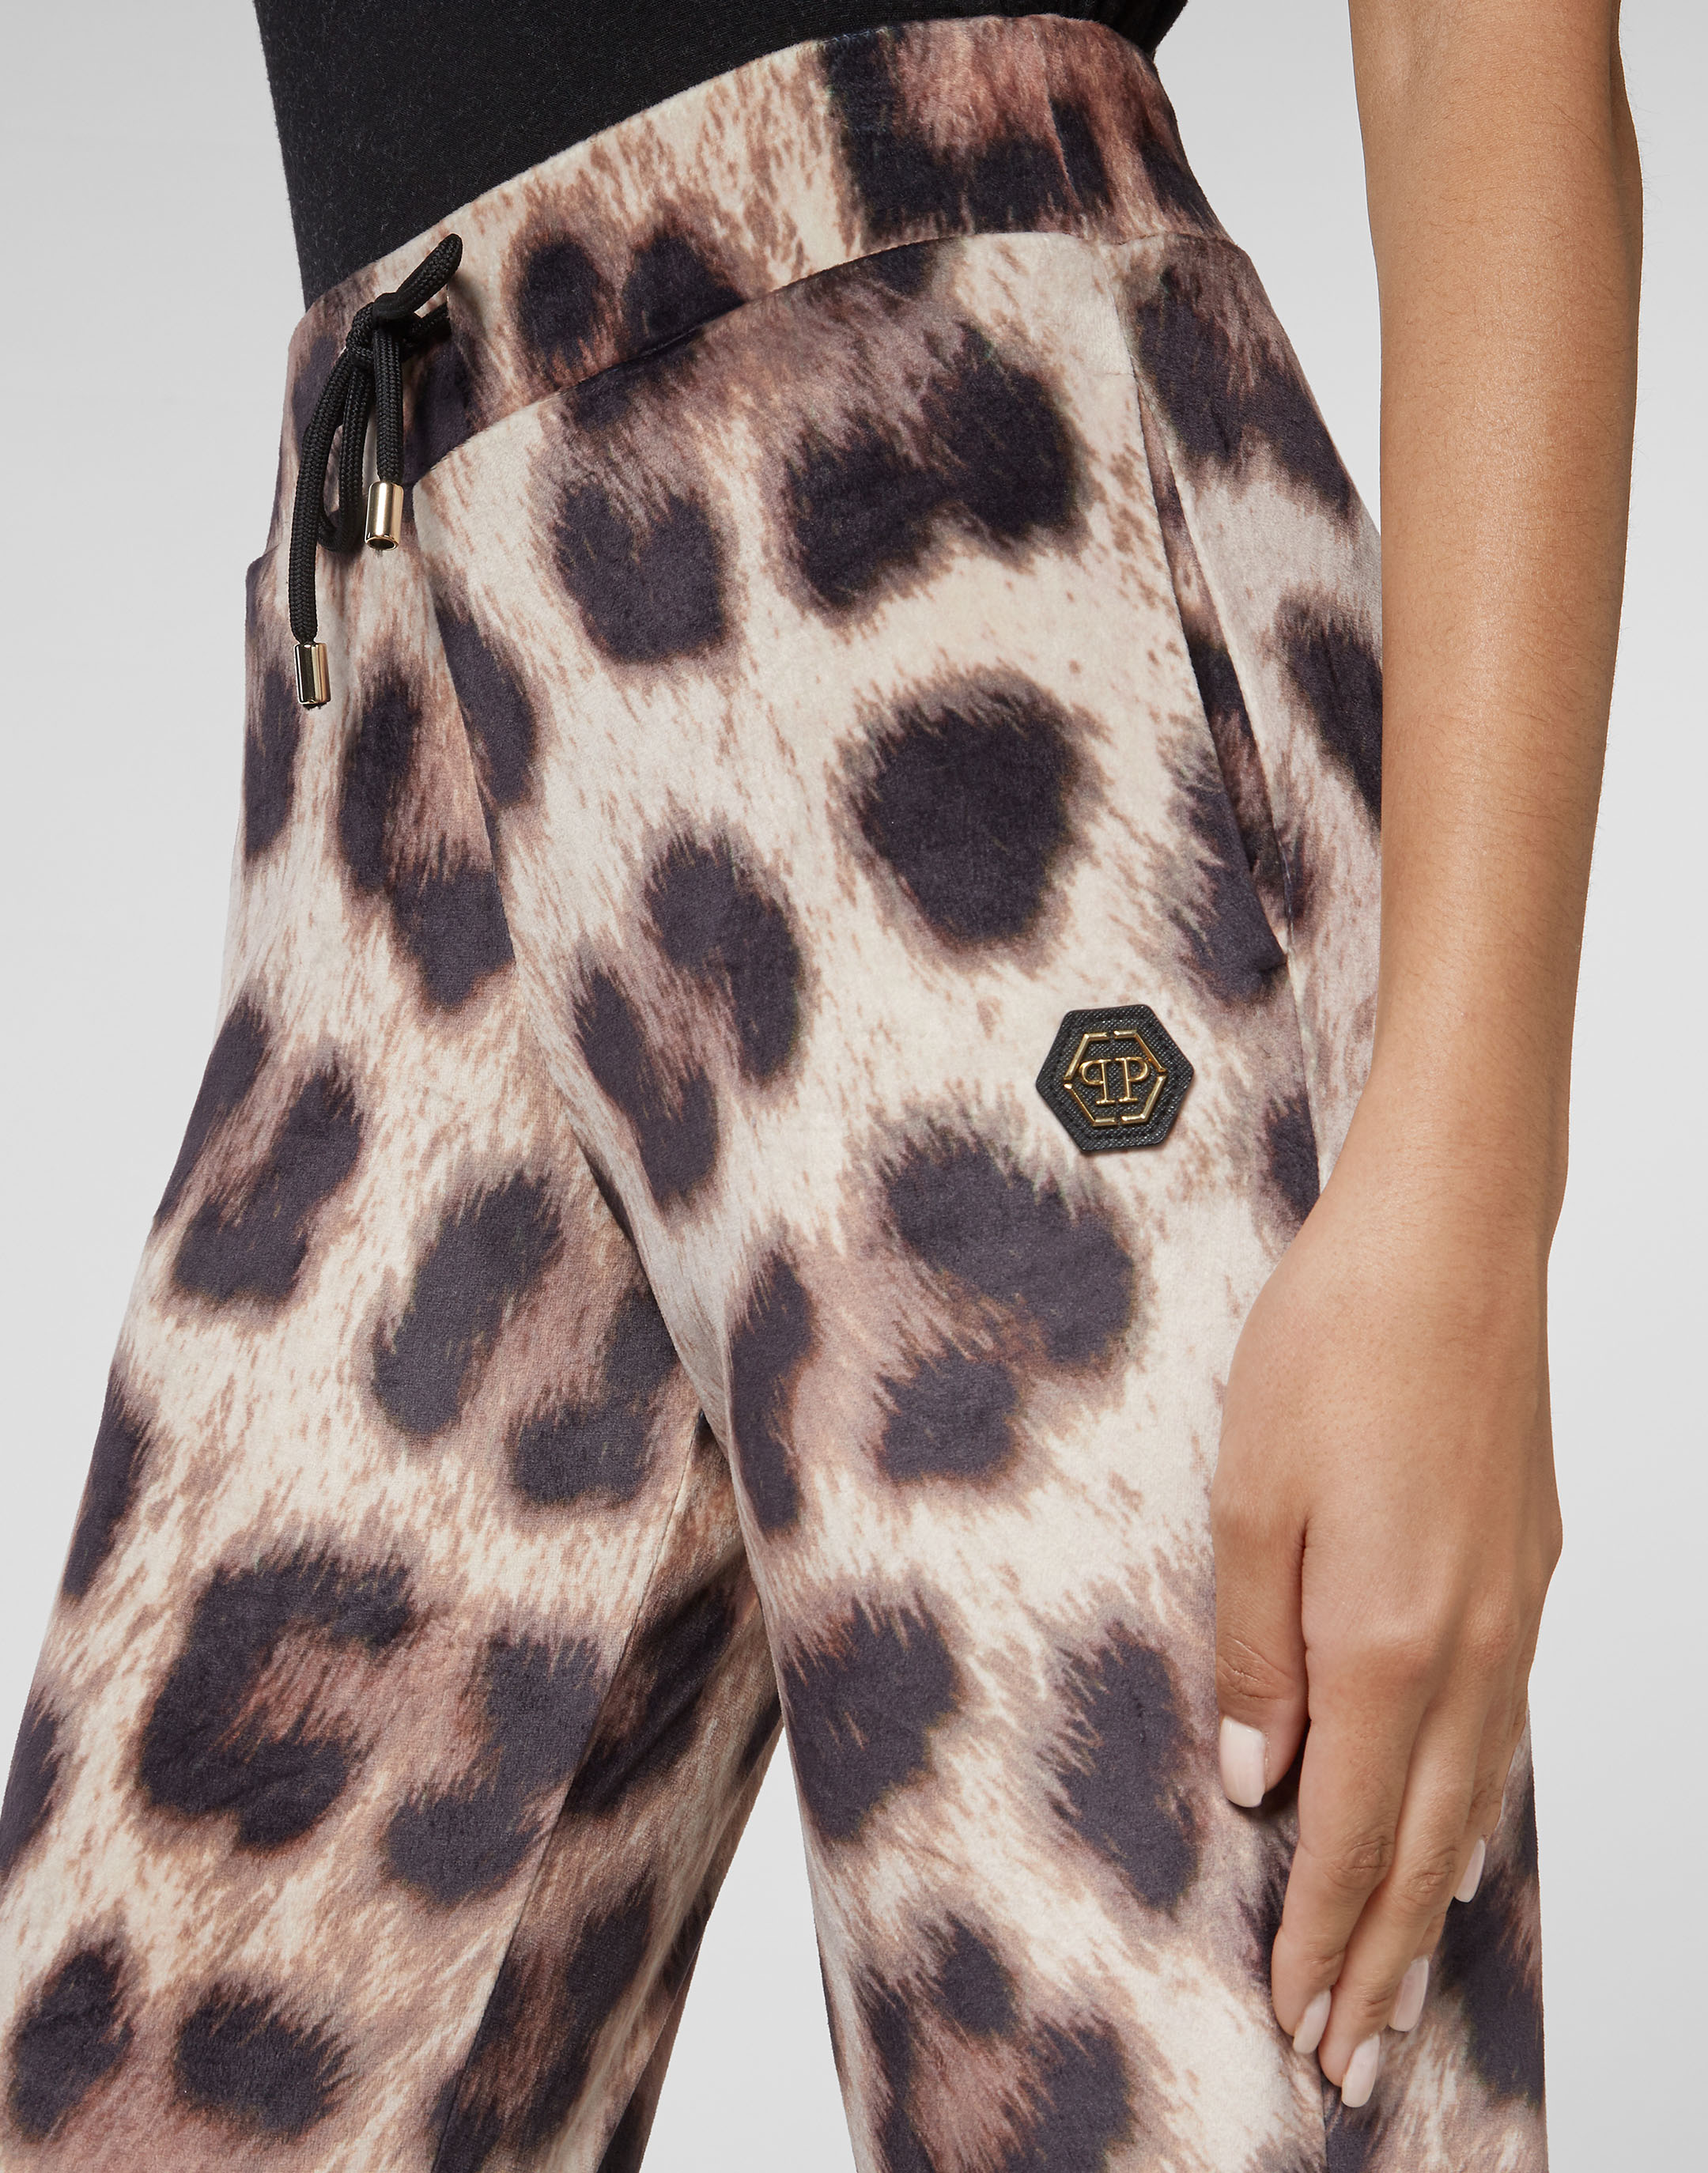 Leopard Velvet Printed Leggings